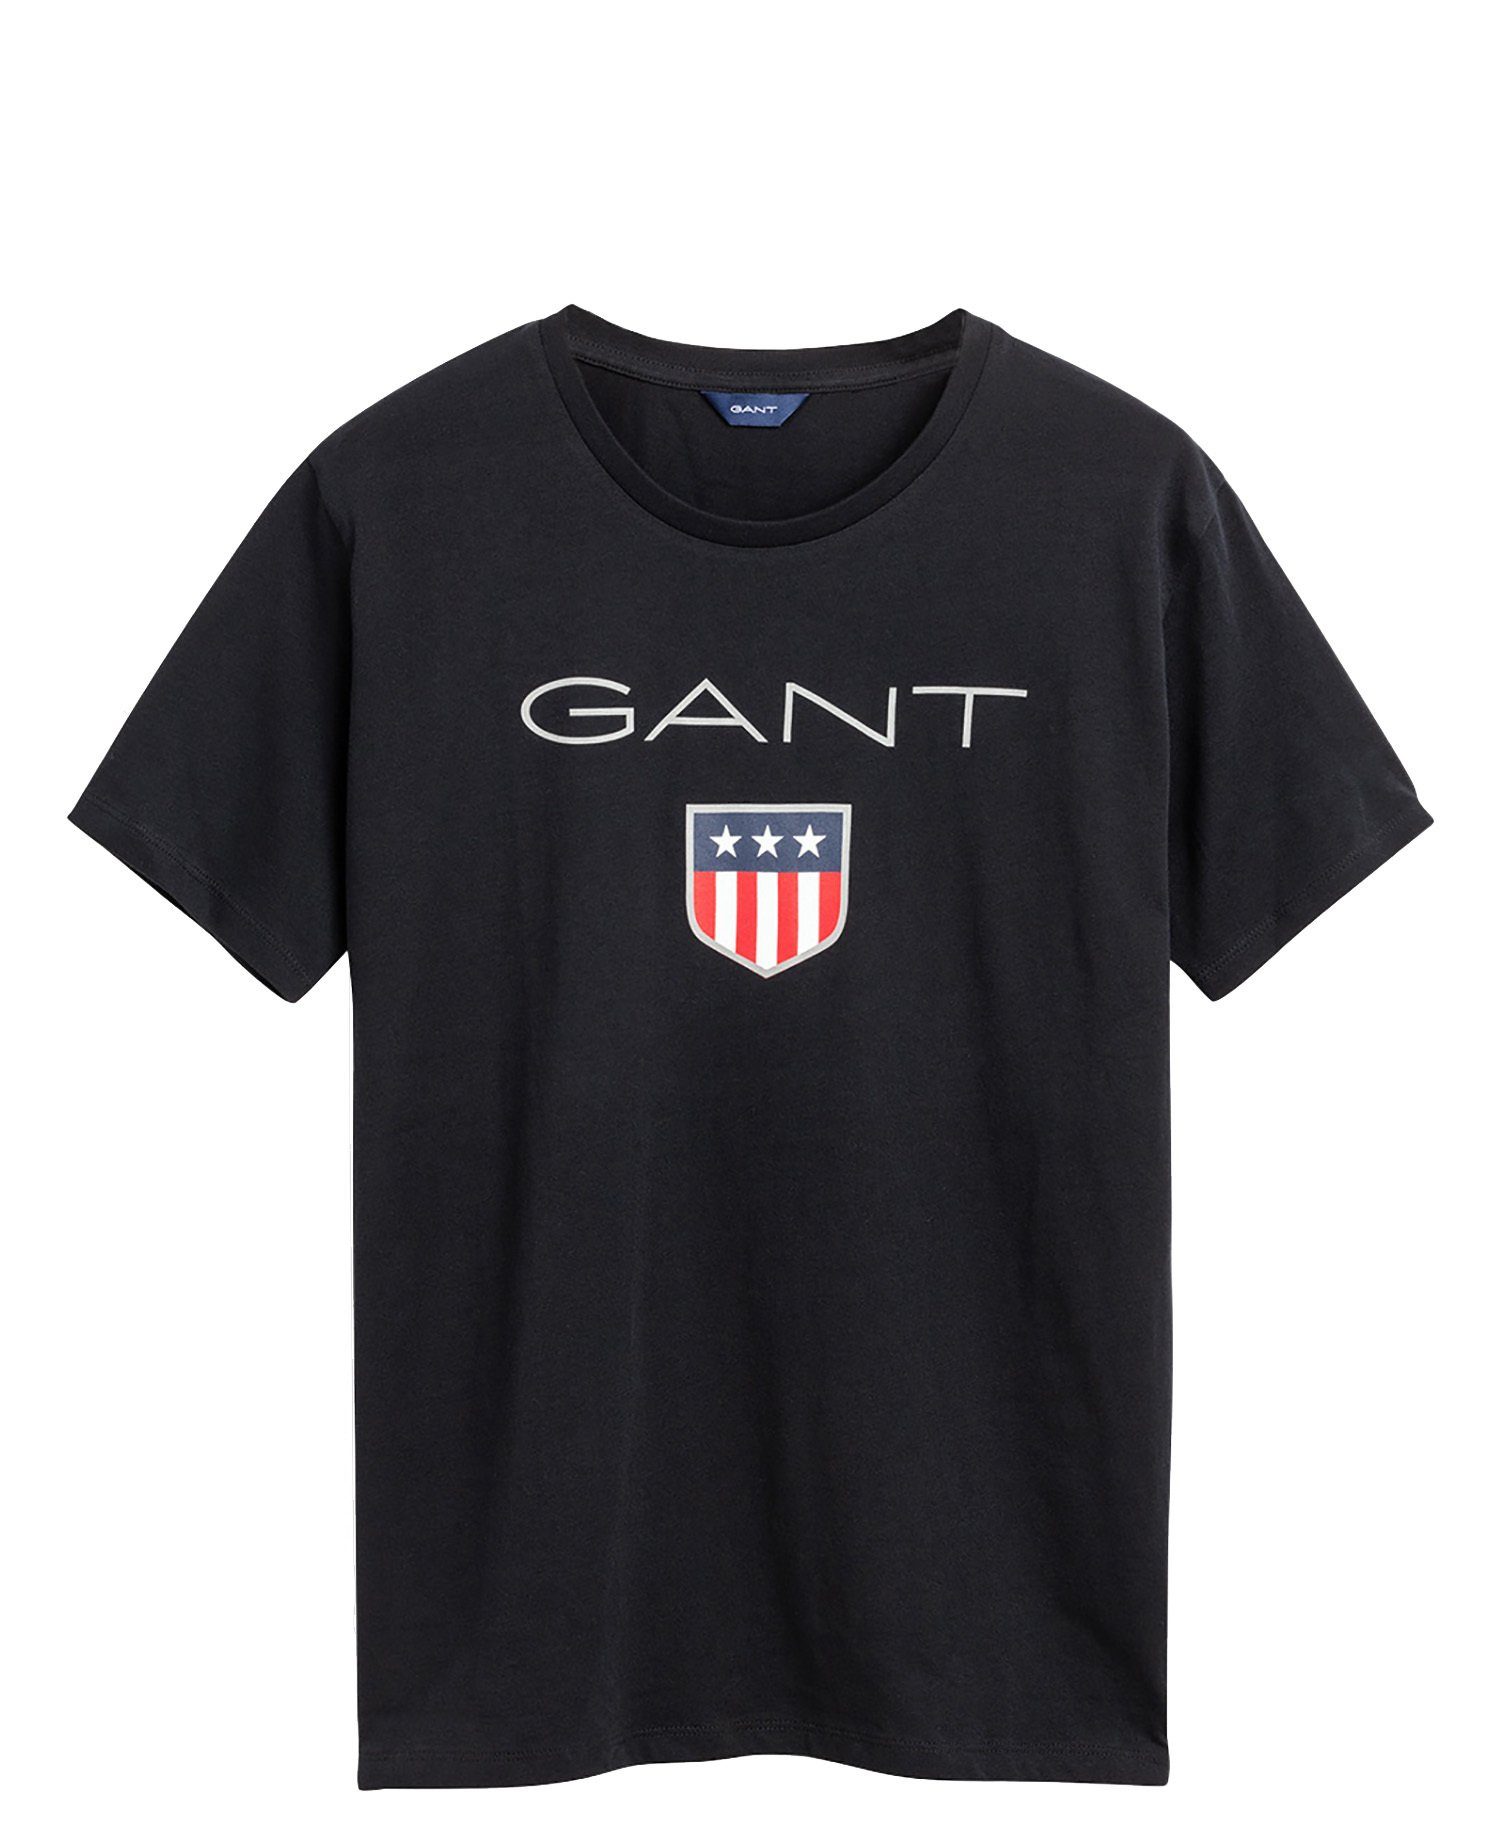 Gant T-Shirt Jungen T-Shirt - Teen Boys SHIELD Logo, Kurzarm Schwarz